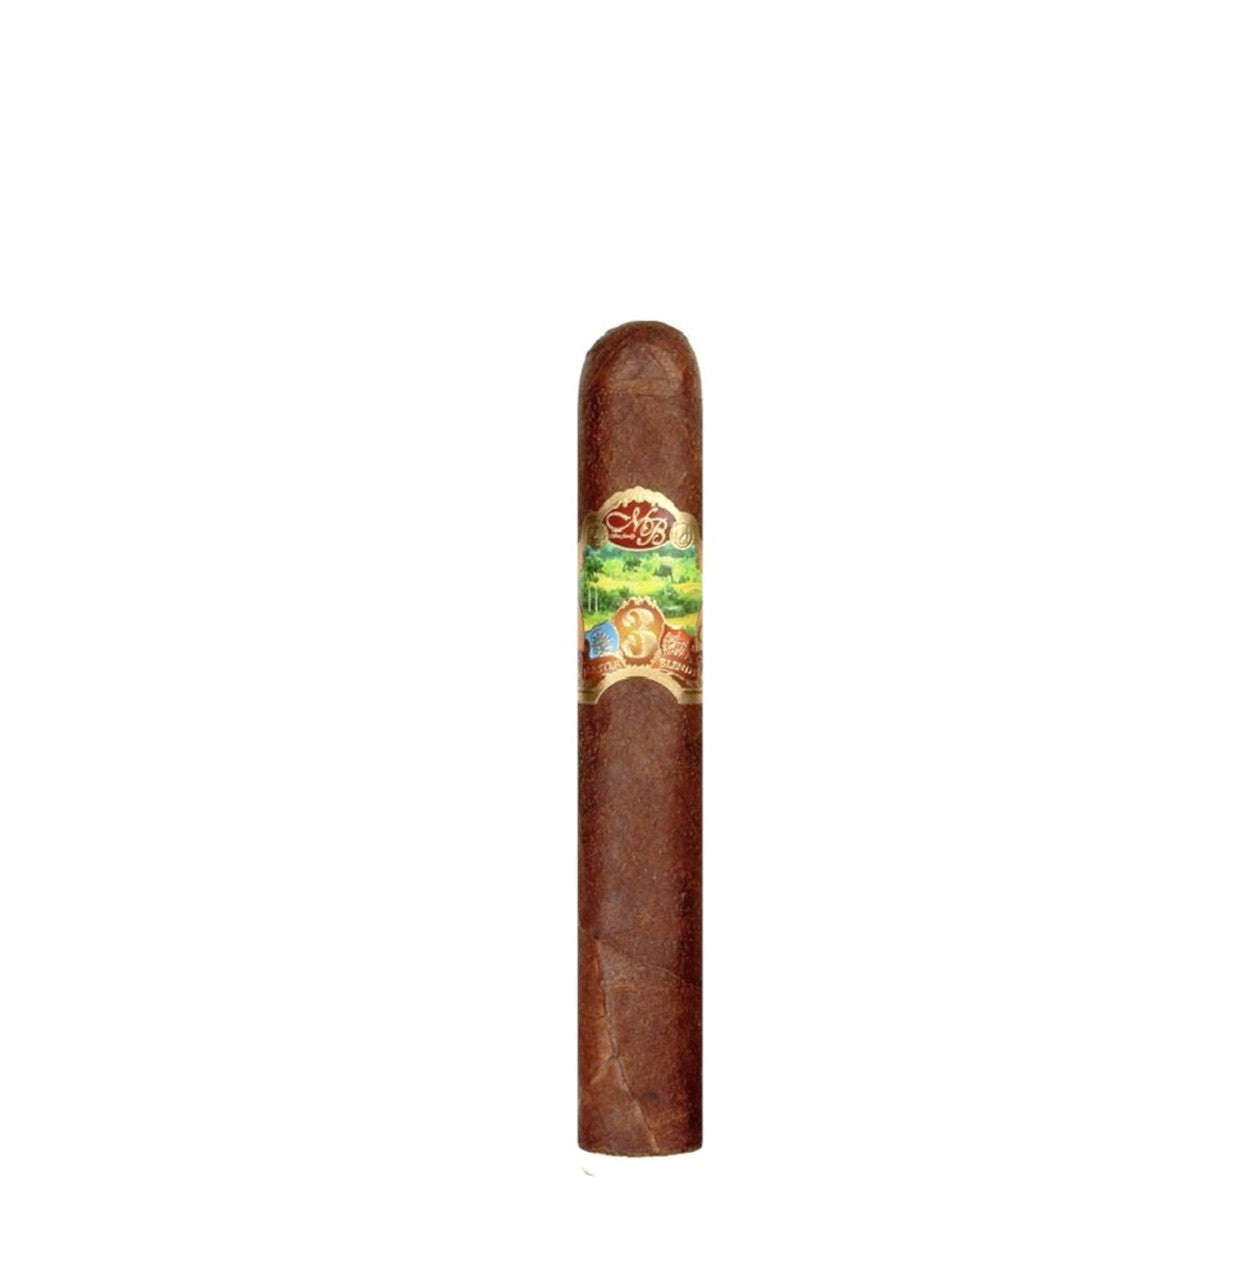 Oliva Master Blend Robusto Cigar